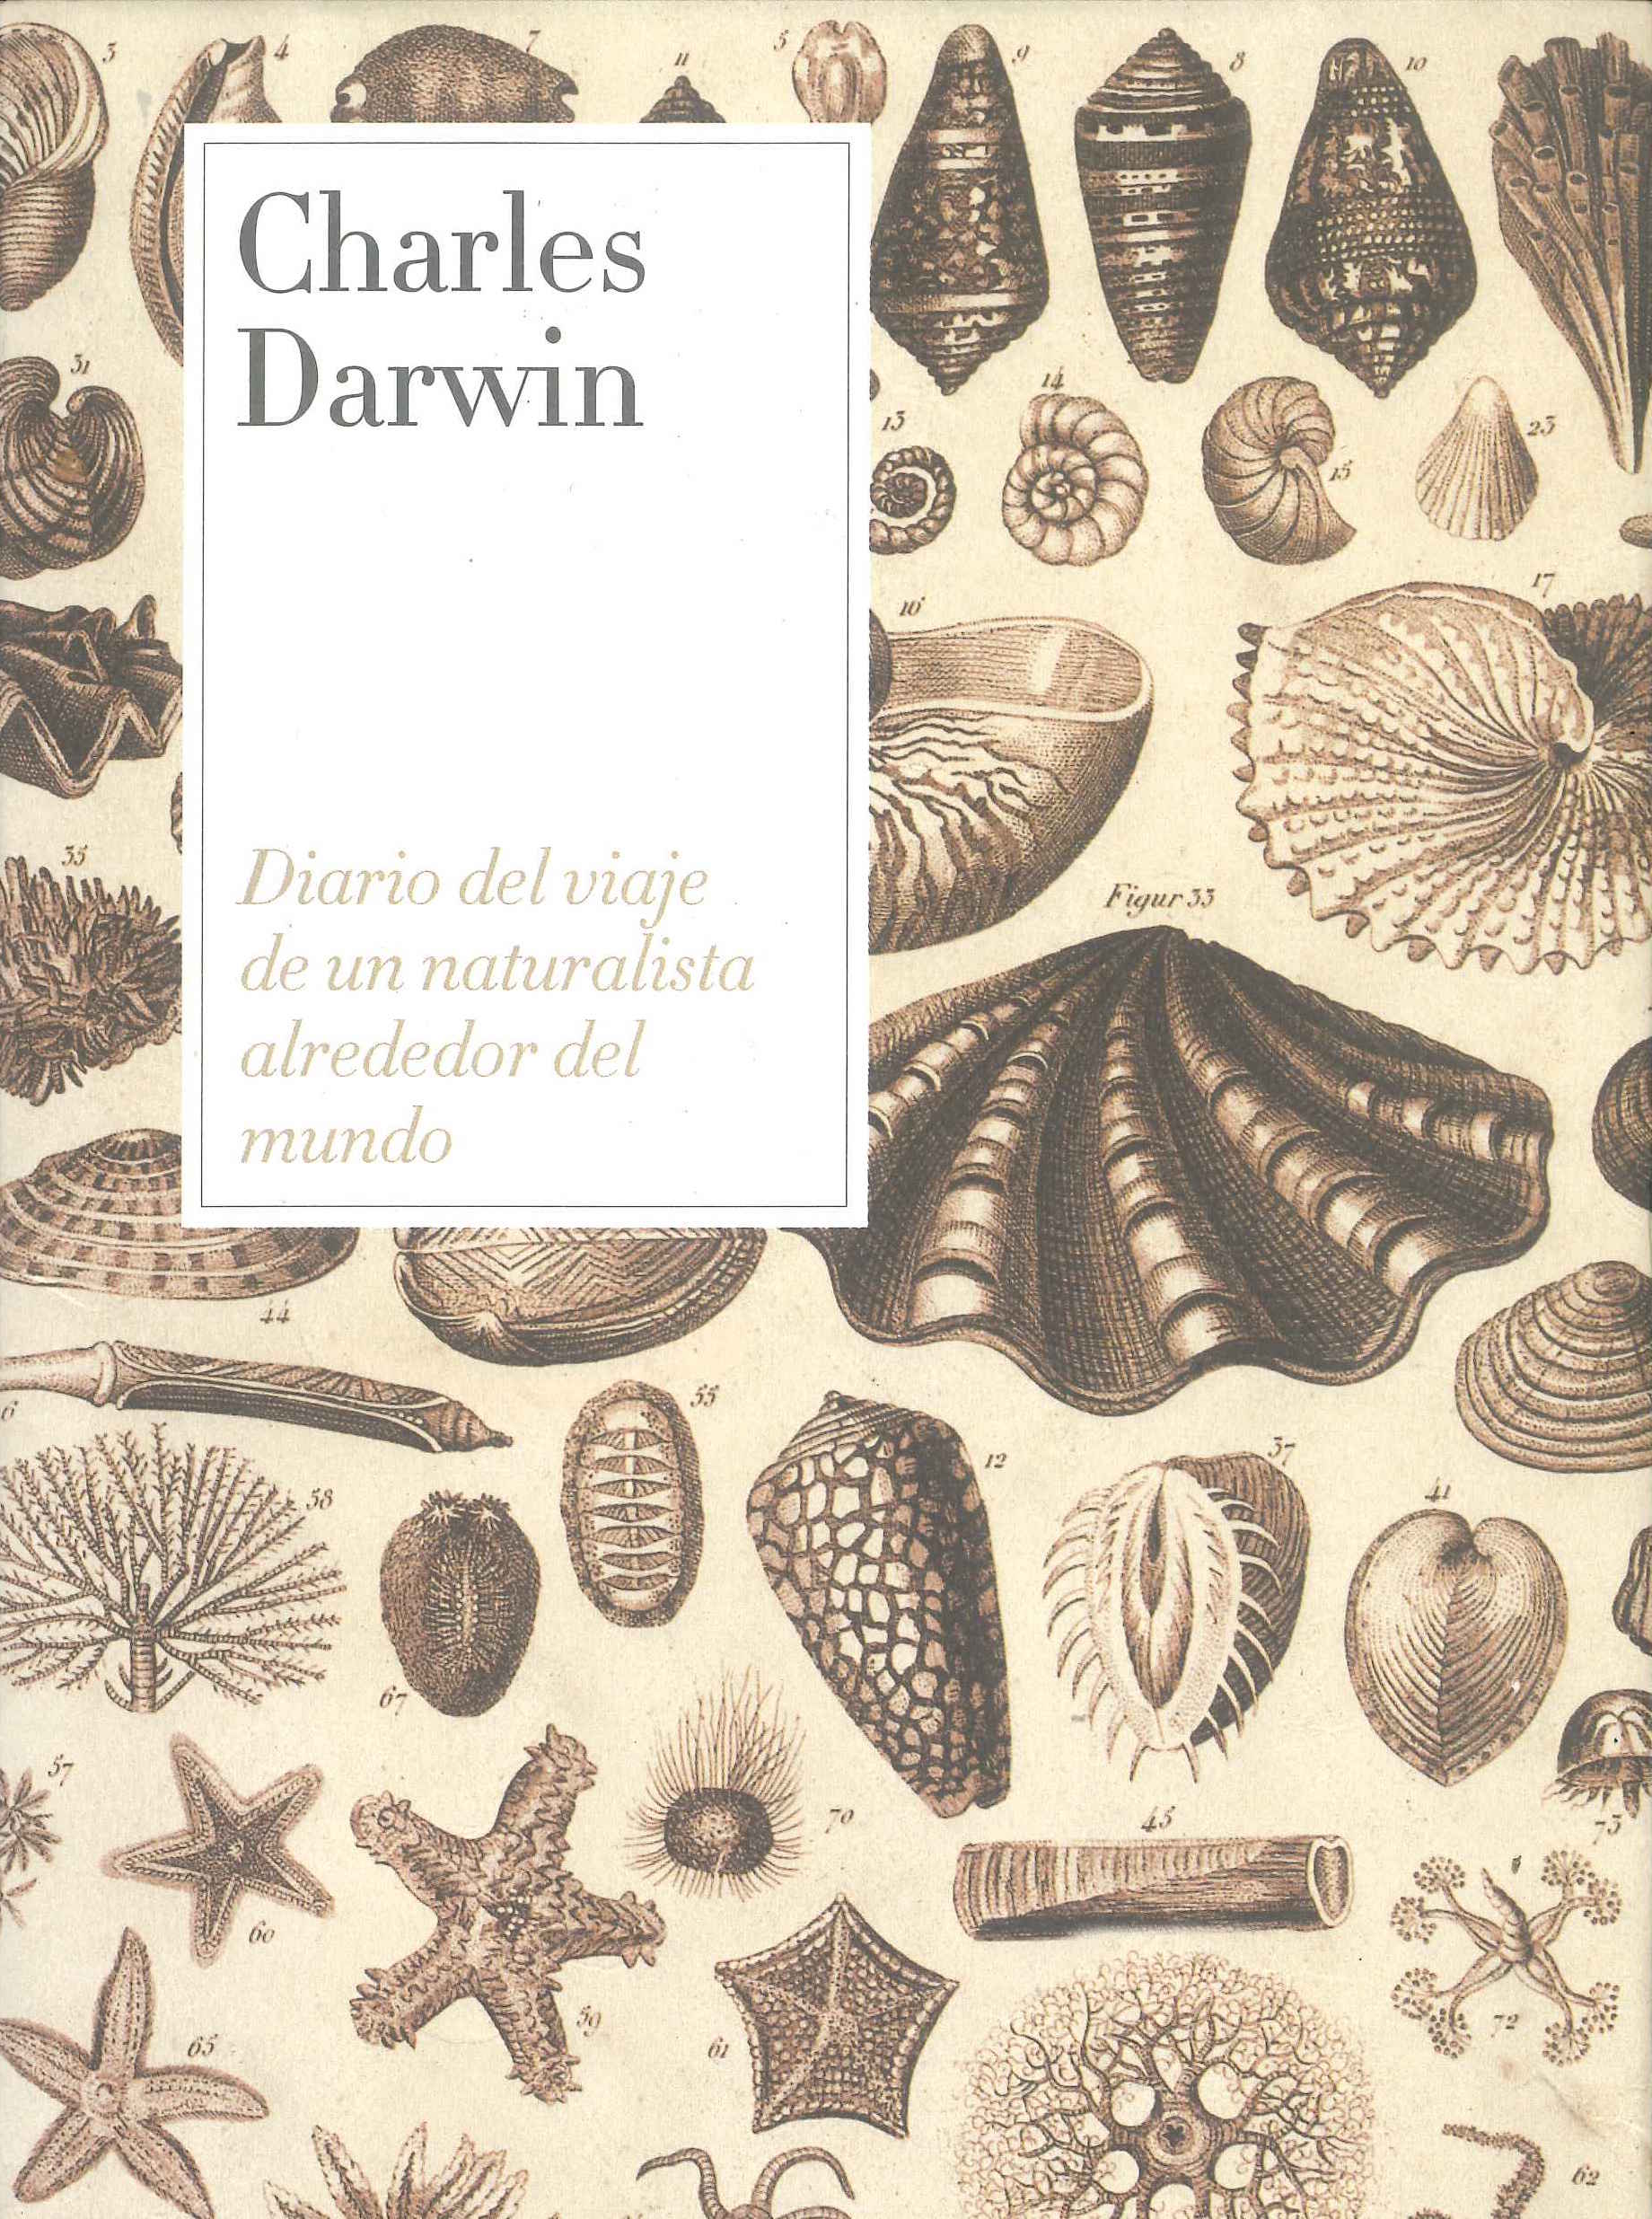 Diario de viaje de Darwin